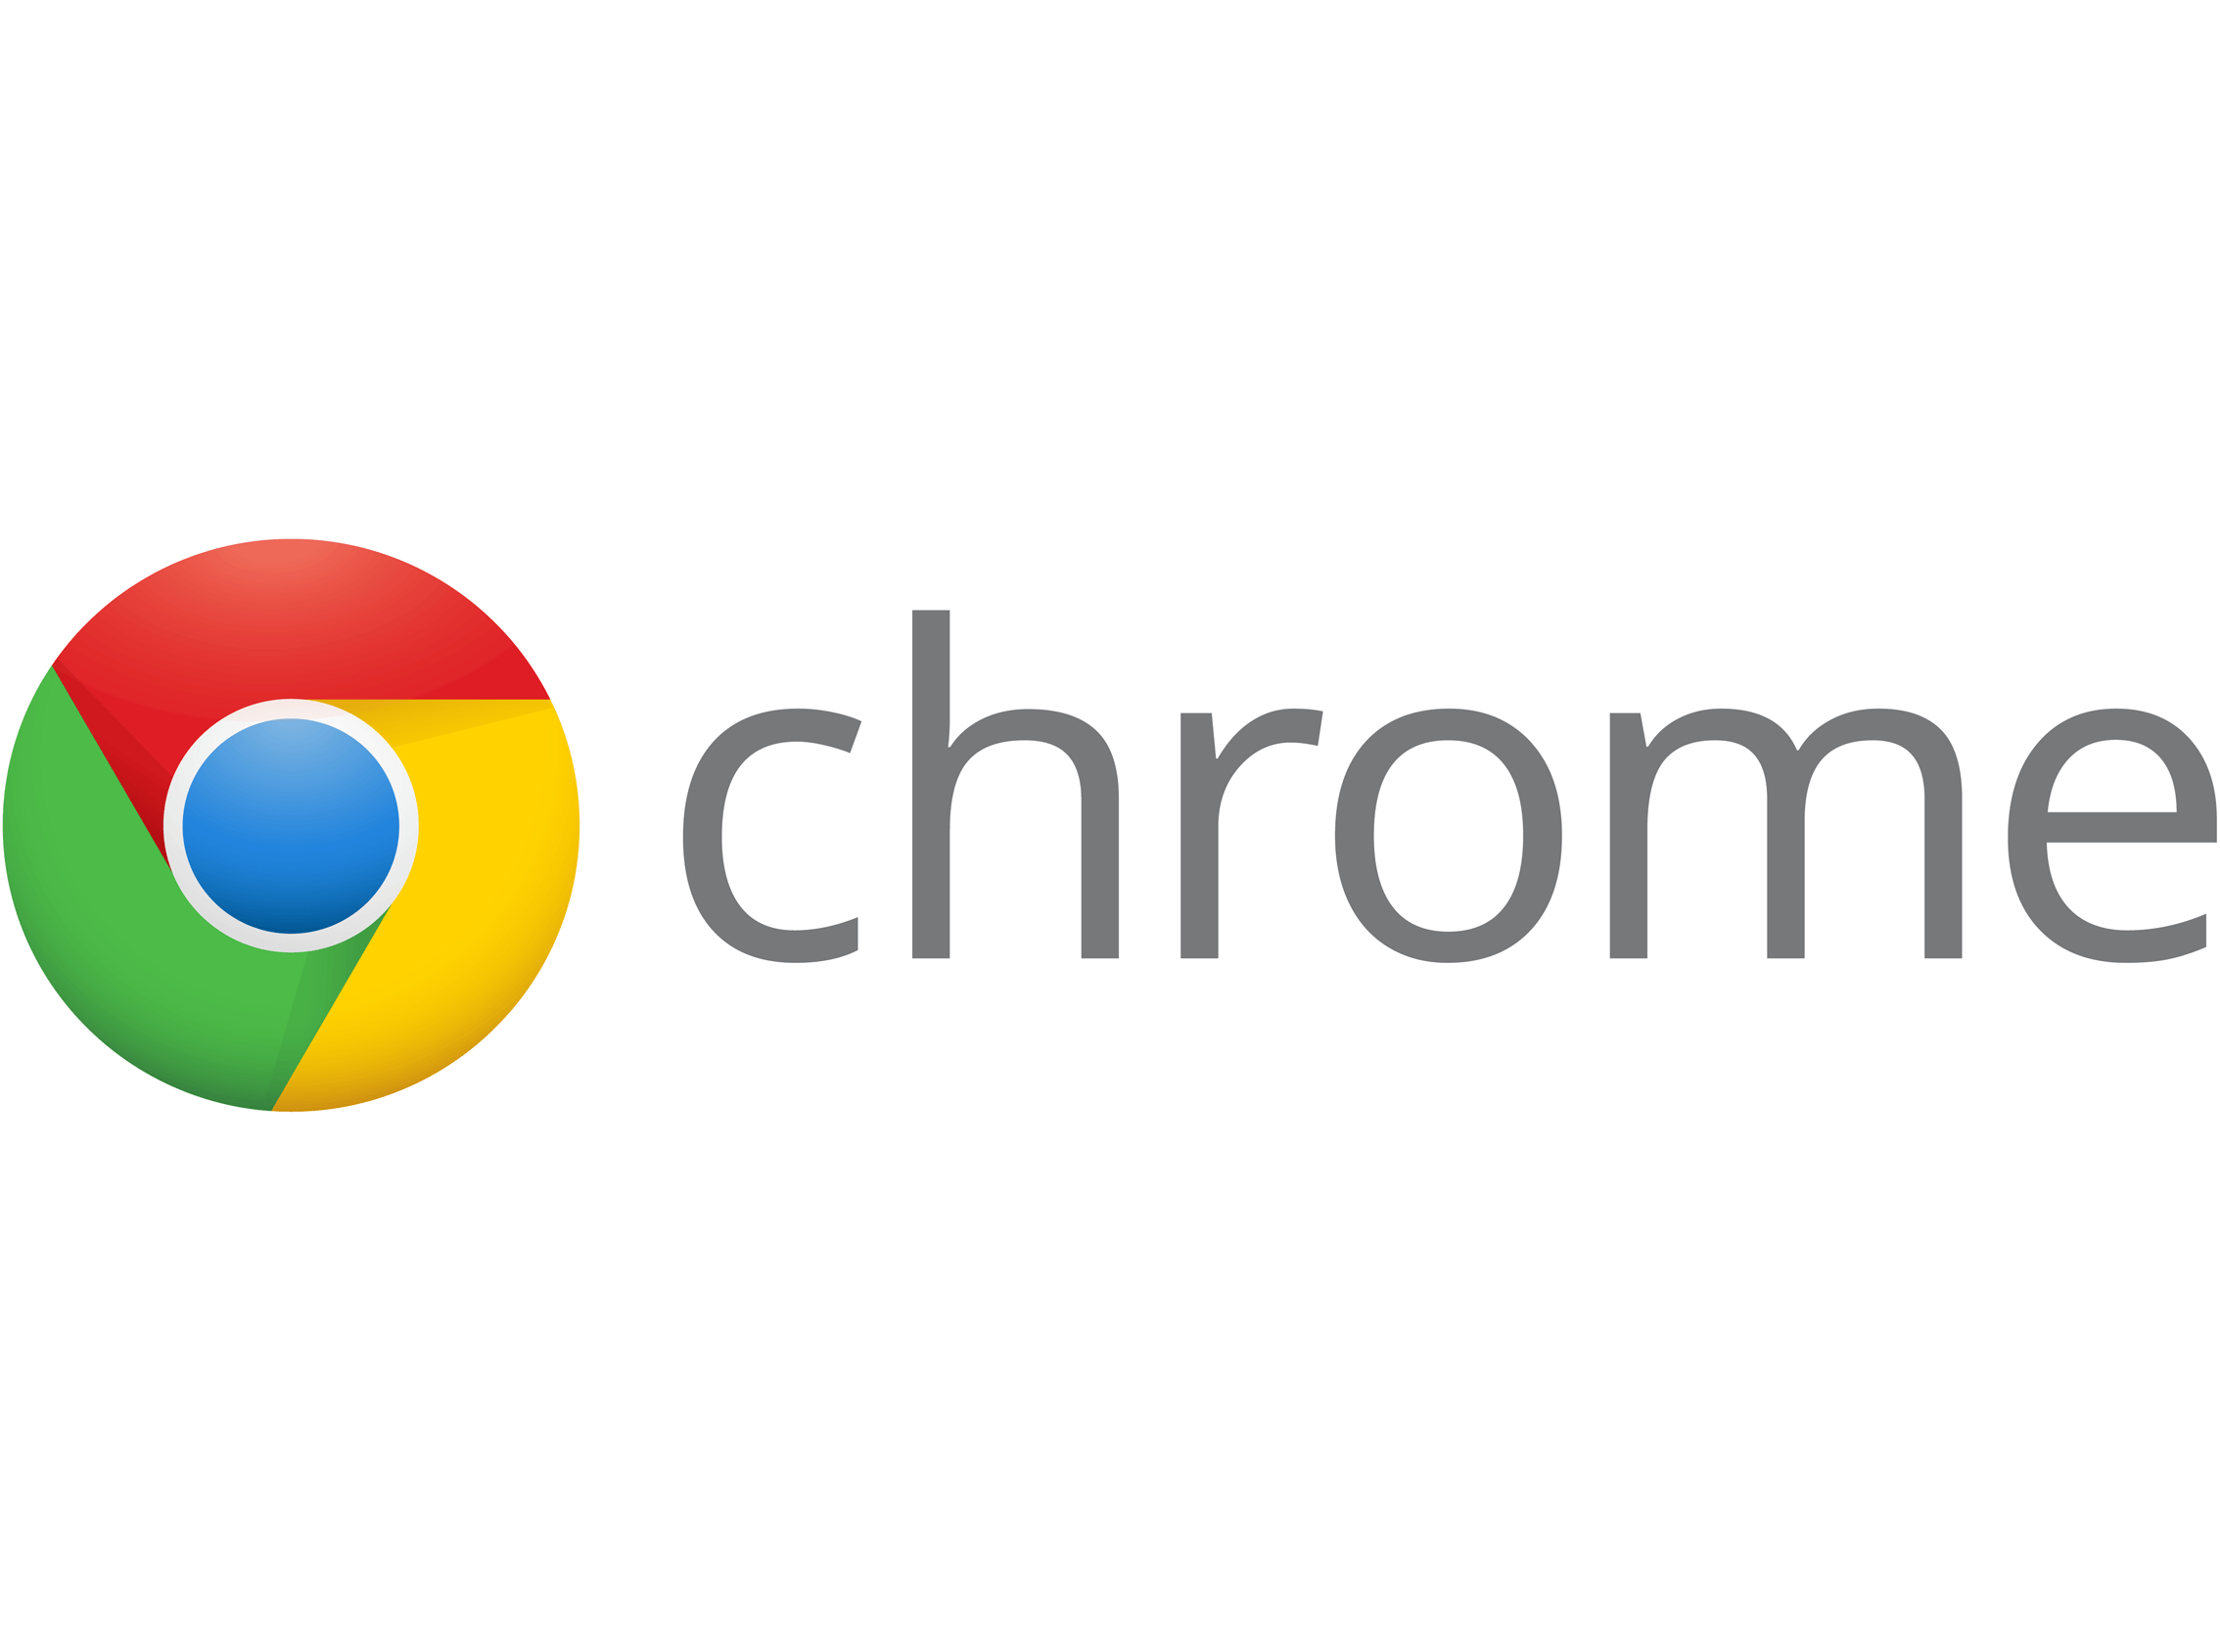 Official Google Chrome Logo - Microsoft removes Google Chrome app from Windows 10 Store - Myce.com